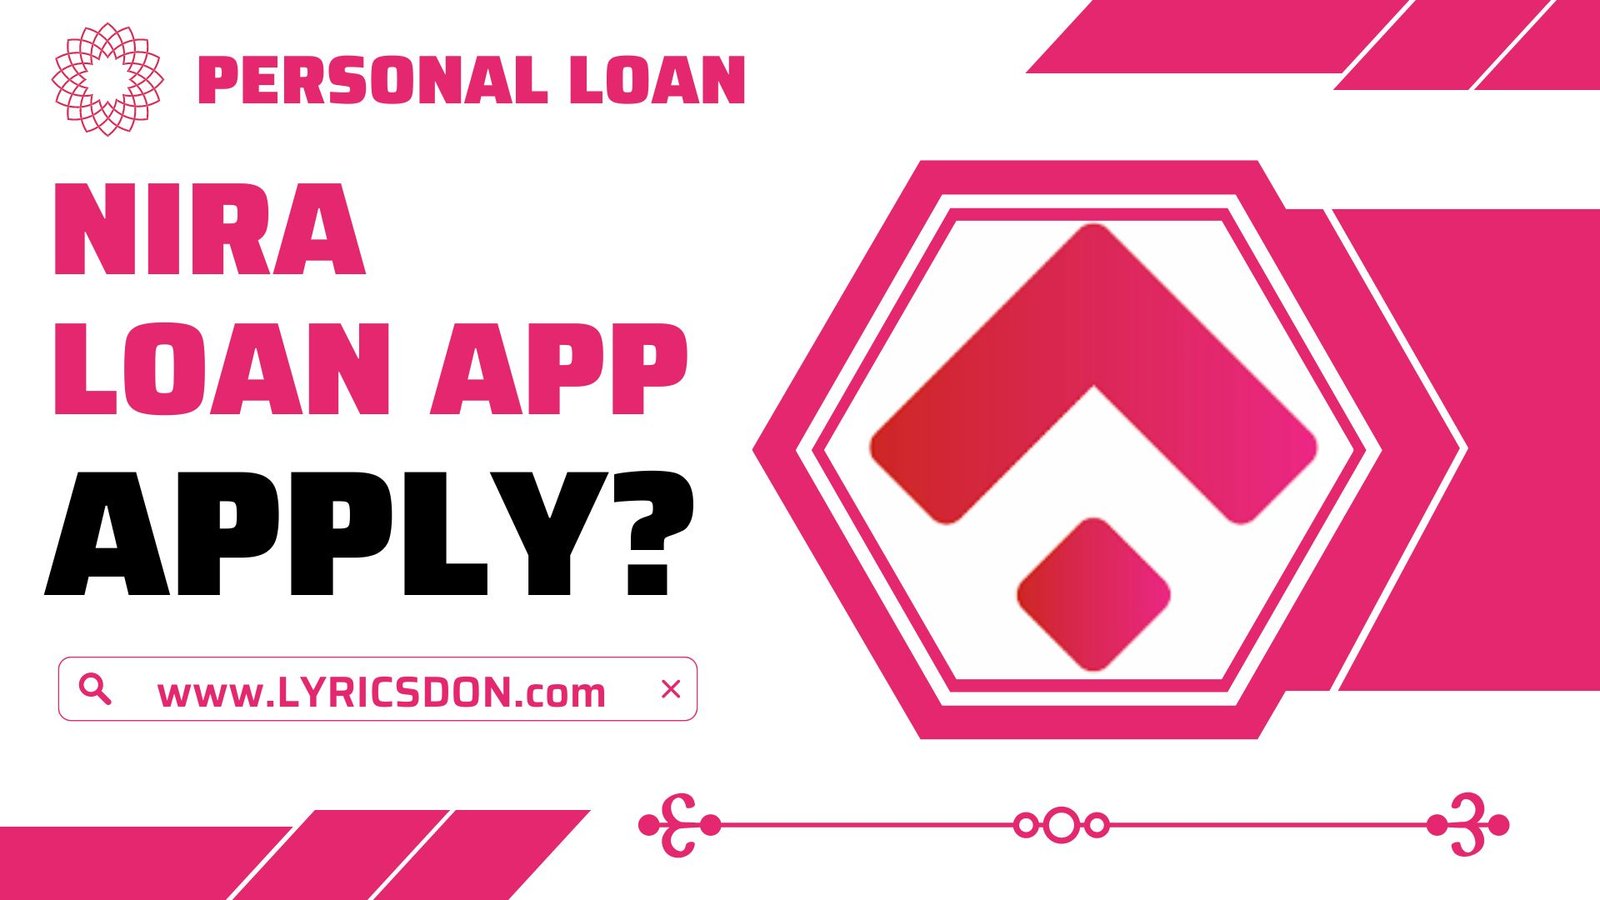 NIRA Loan App से लोन कैसे लें?